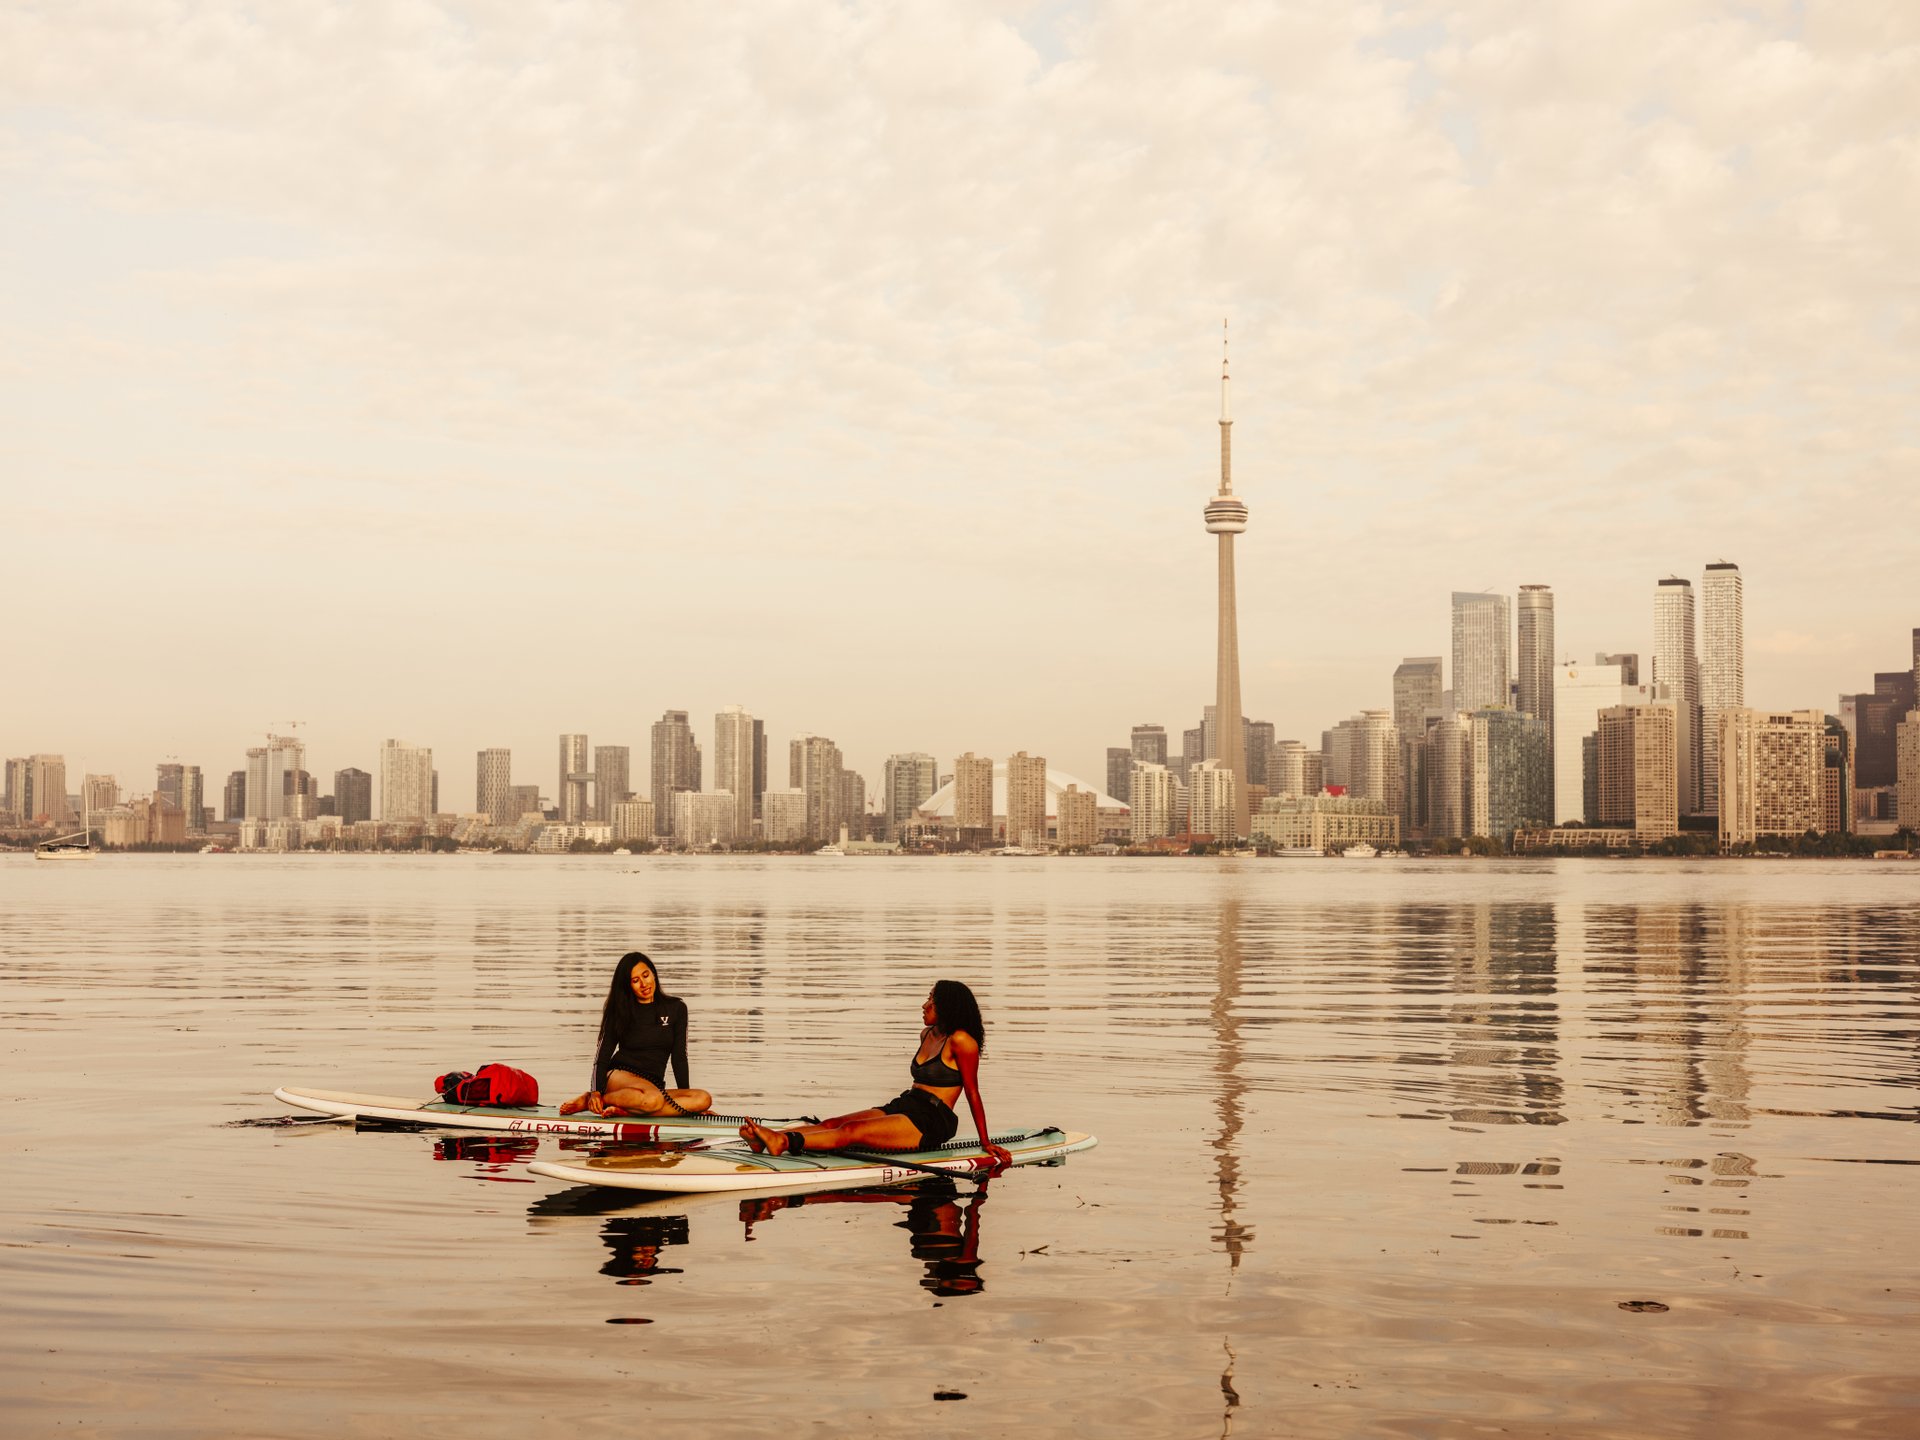 Canada: the history and must see sights of Toronto - Saga